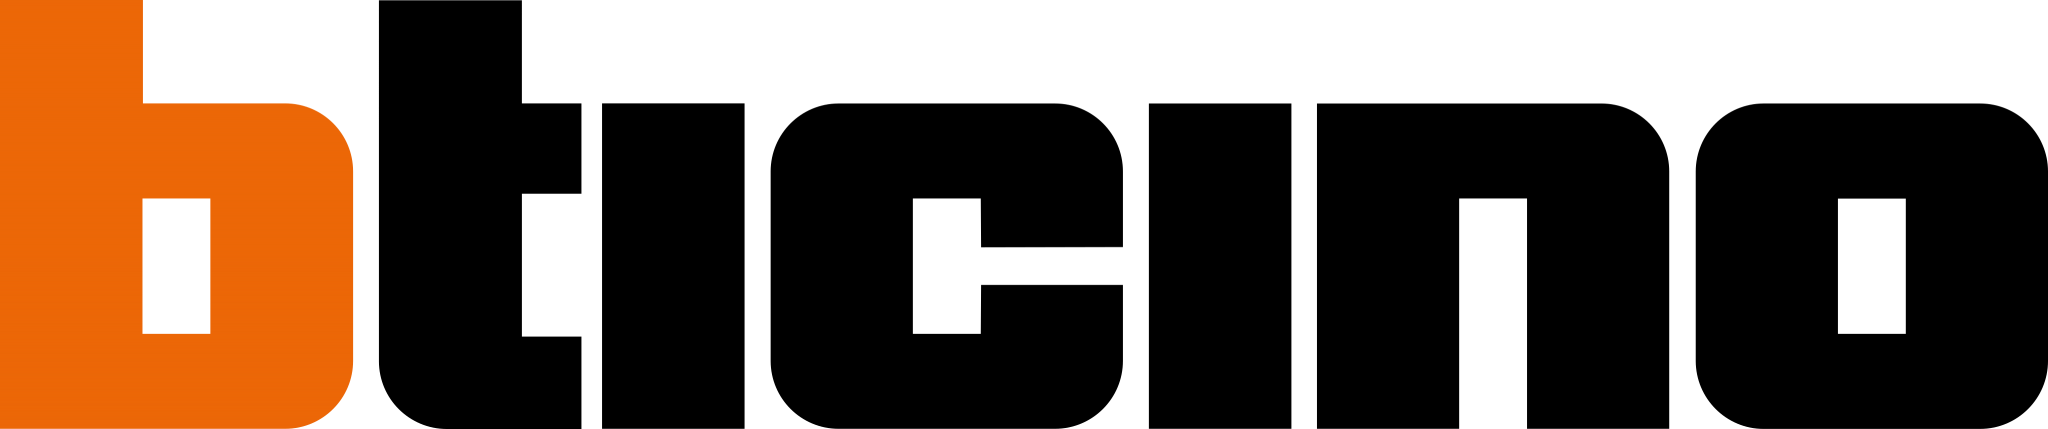 Bticino Logo - PNG e Vetor - Download de Logo